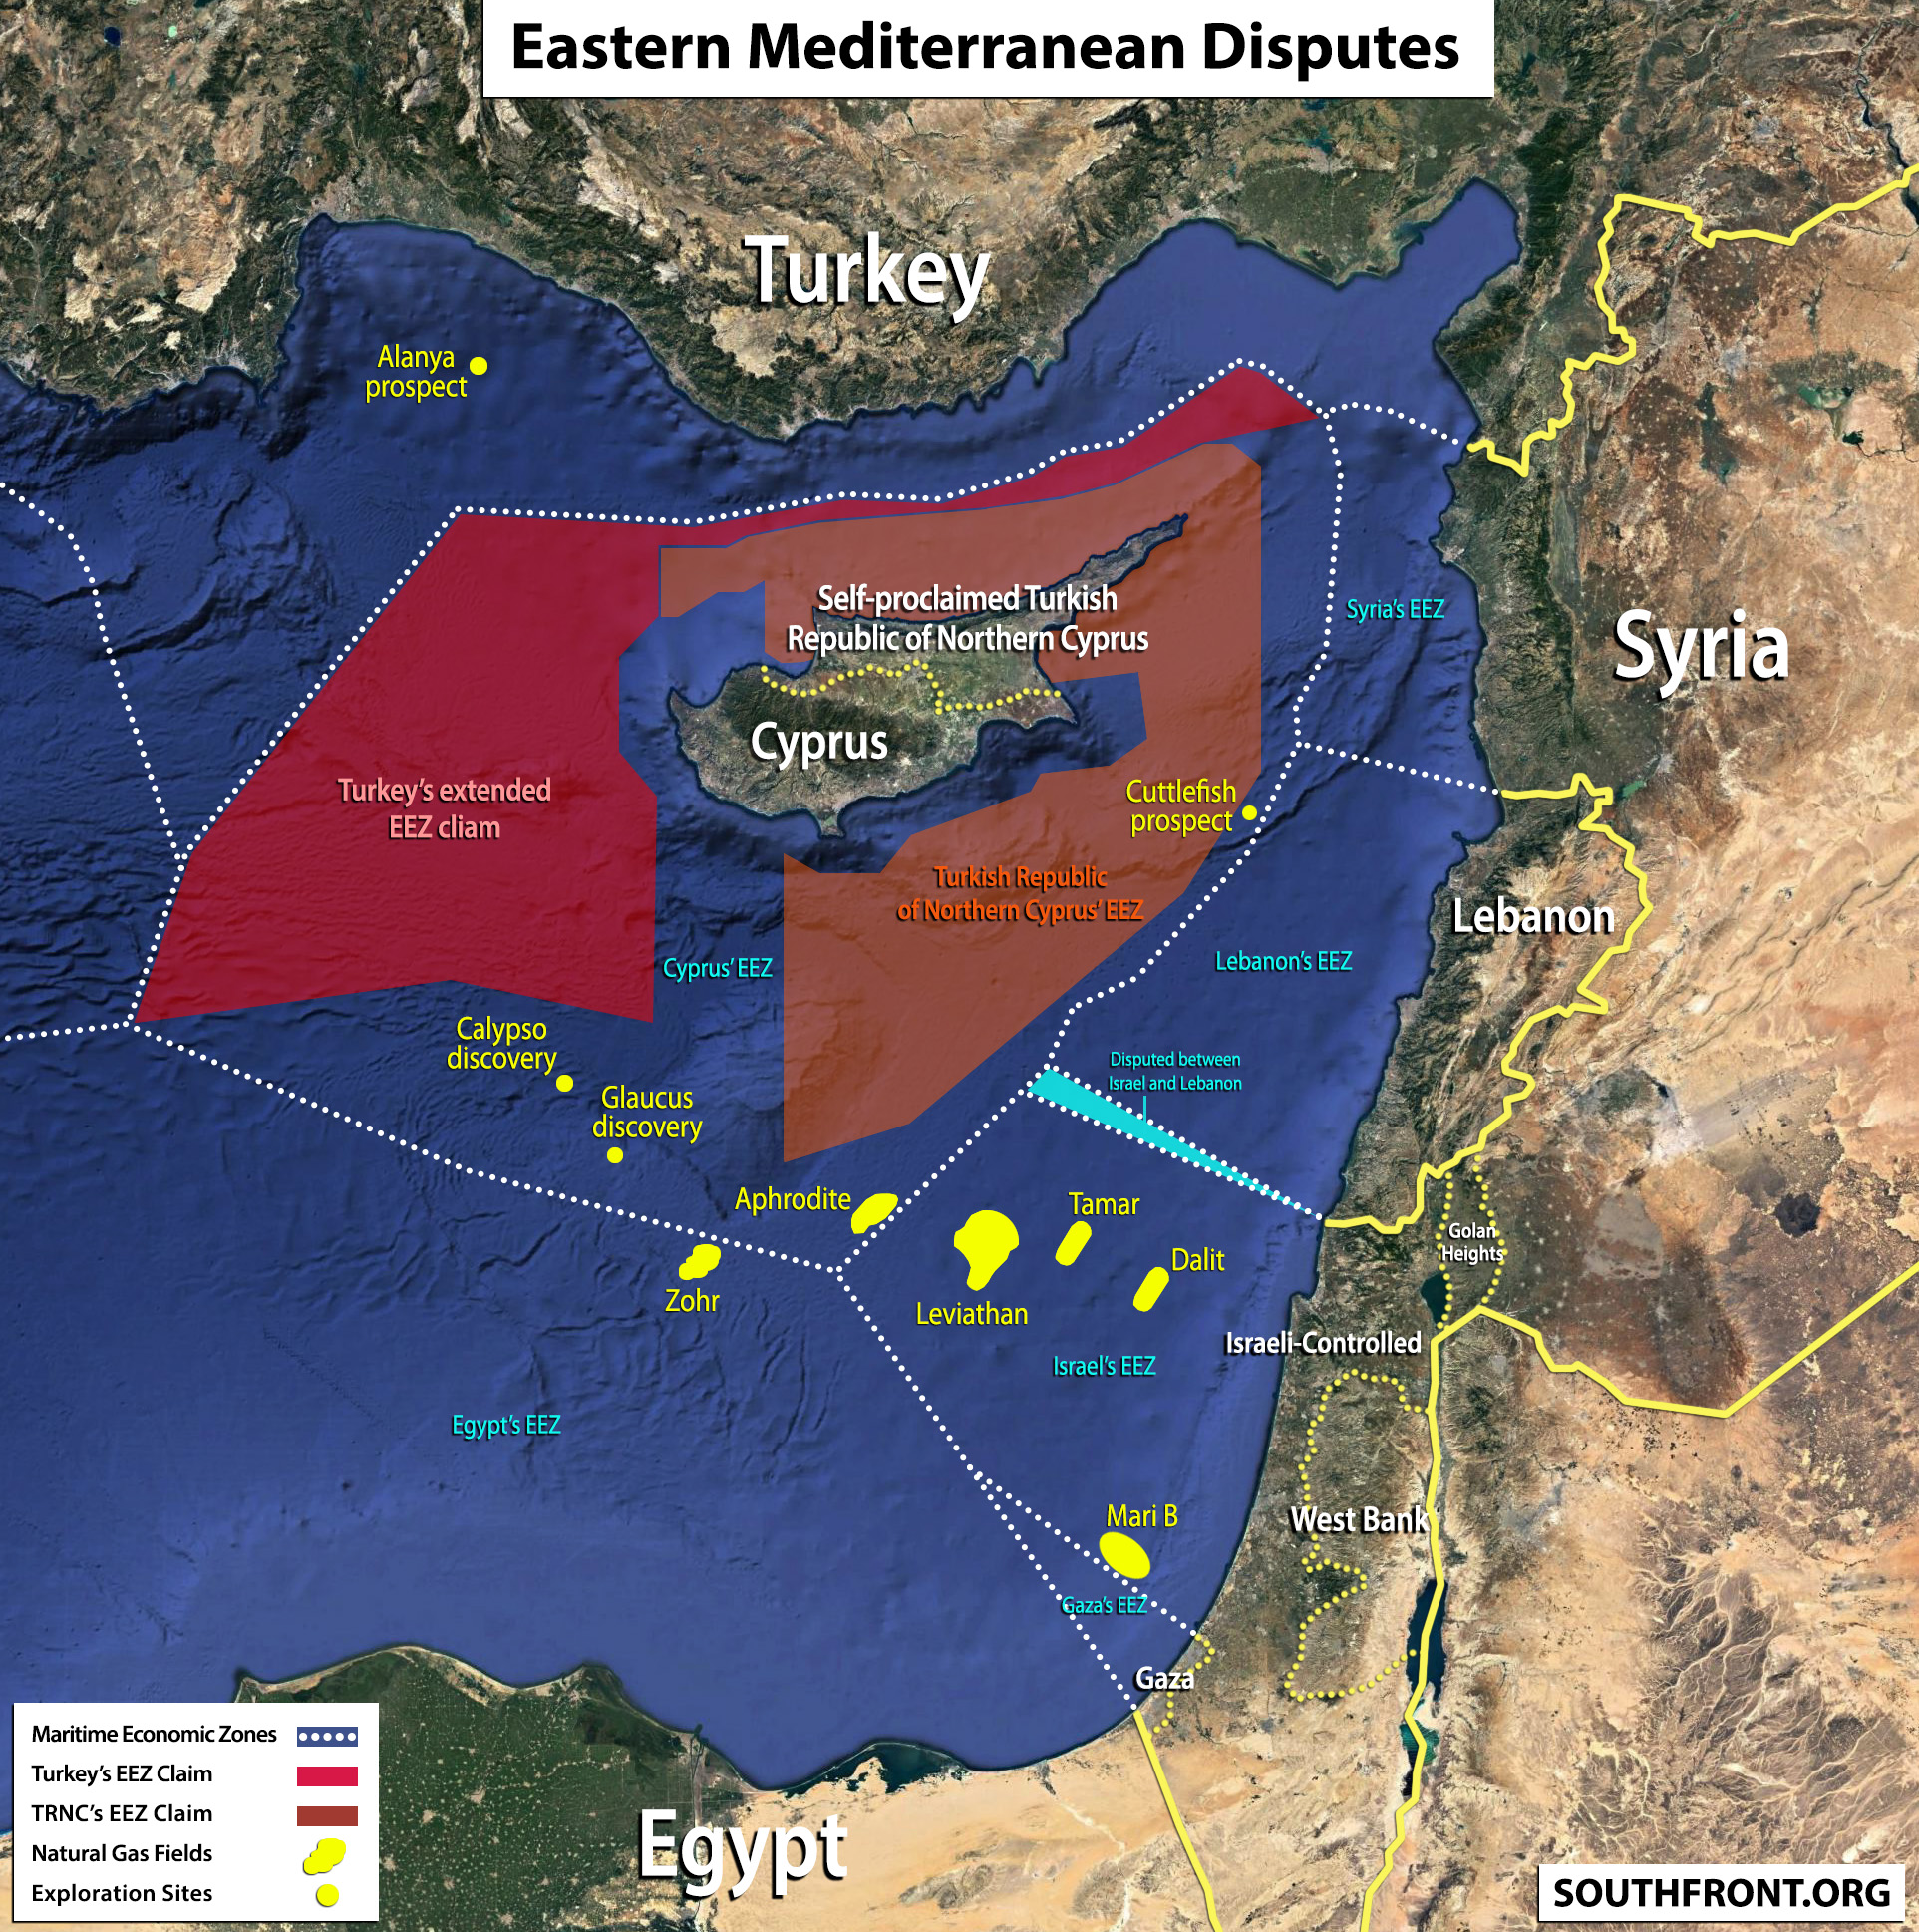 Μόνη της και πάλι η Κύπρος αντιστέκεται: «Δεν έχουμε άλλη επιλογή από το να επιμείνουμε στις κυρώσεις κατά της Τουρκίας»